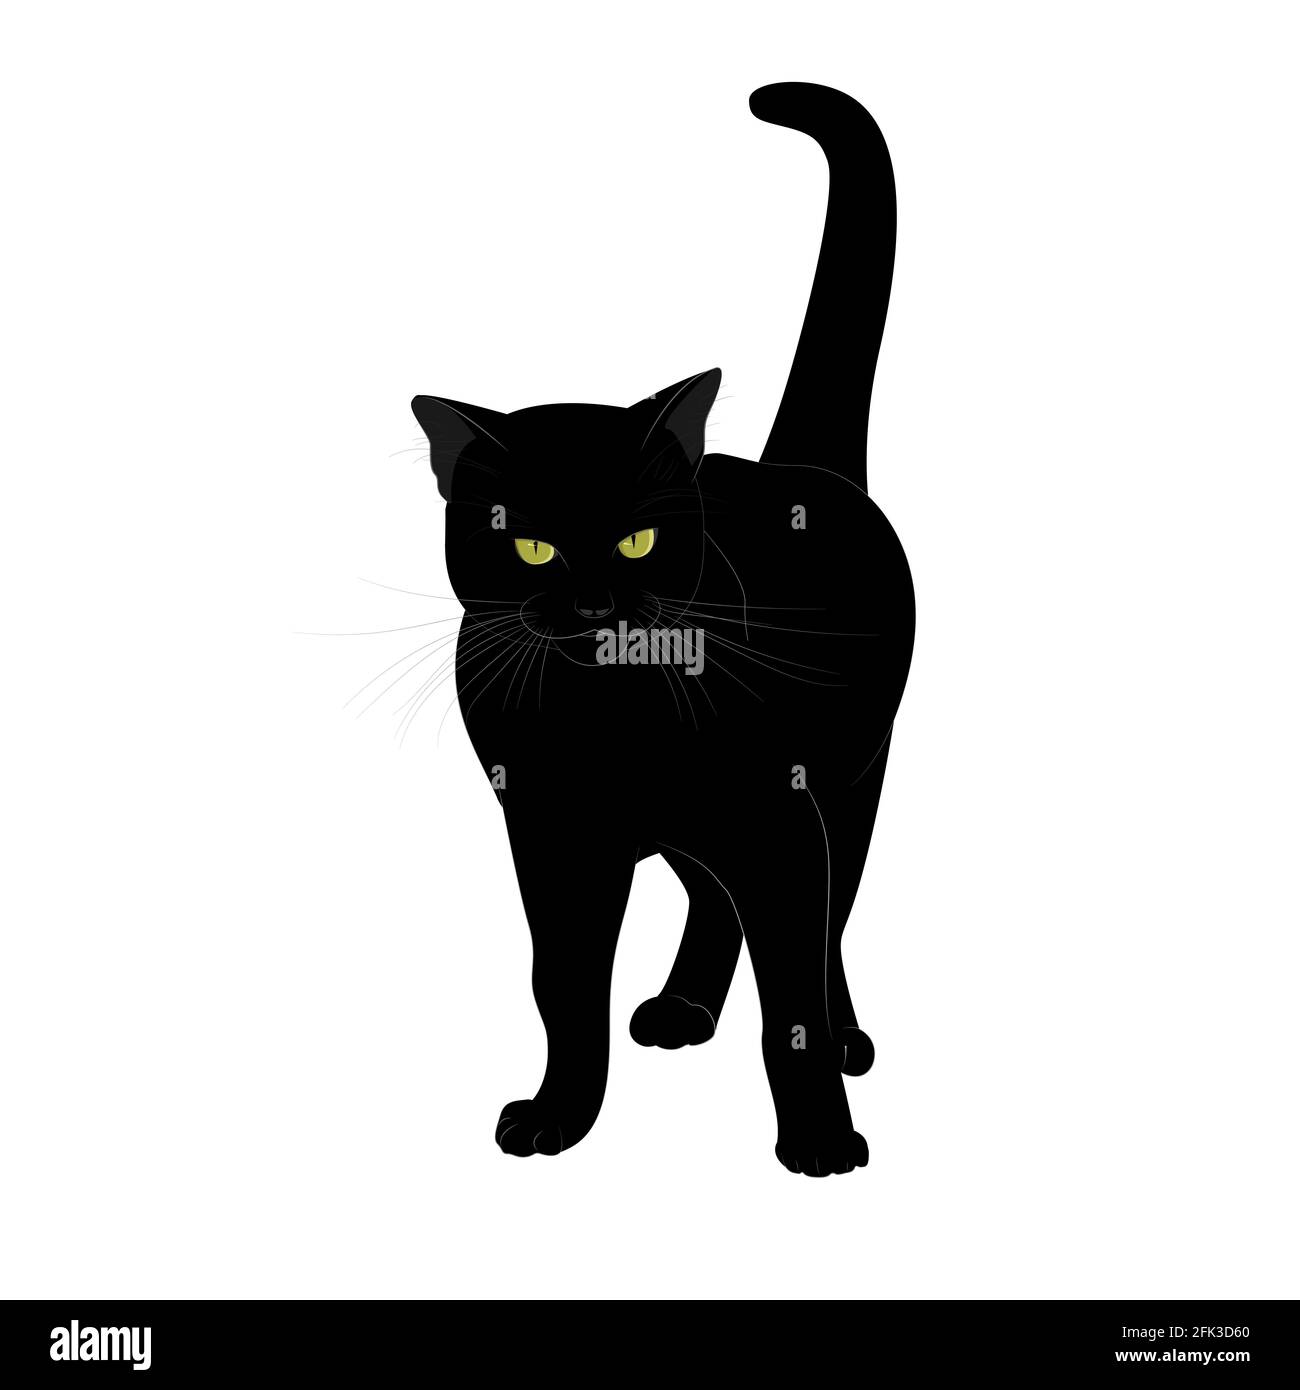 Eine schwarze Katze mit ernstem Aussehen und gelben Augen steht mit  erhobenem Schwanz. Isoliert auf weißem Hintergrund. Vektorgrafik im Cartoon-Stil  Stock-Vektorgrafik - Alamy